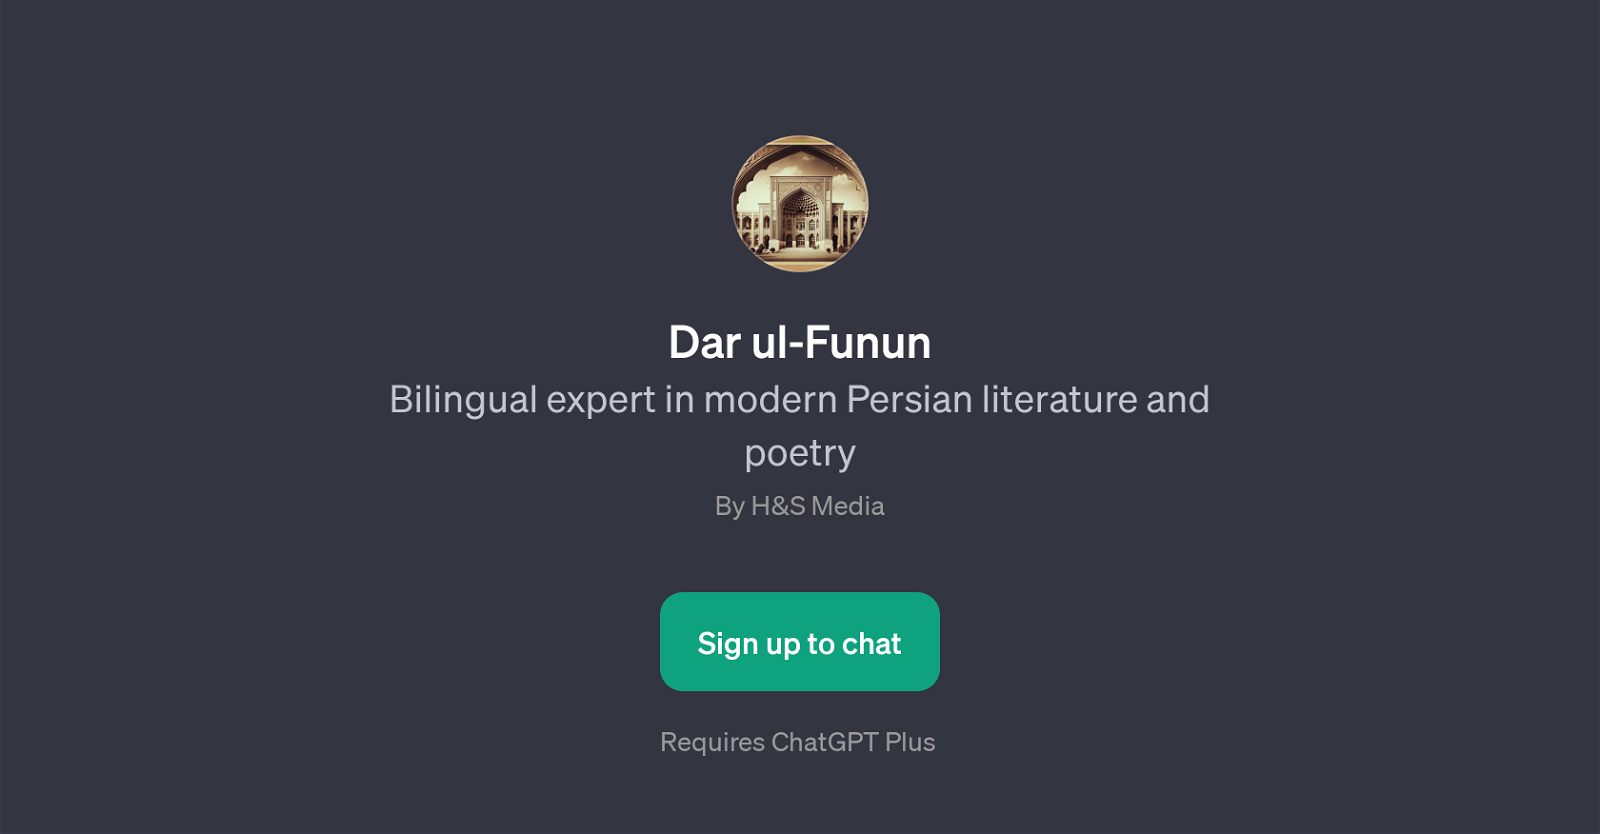 Dar ul-Funun website